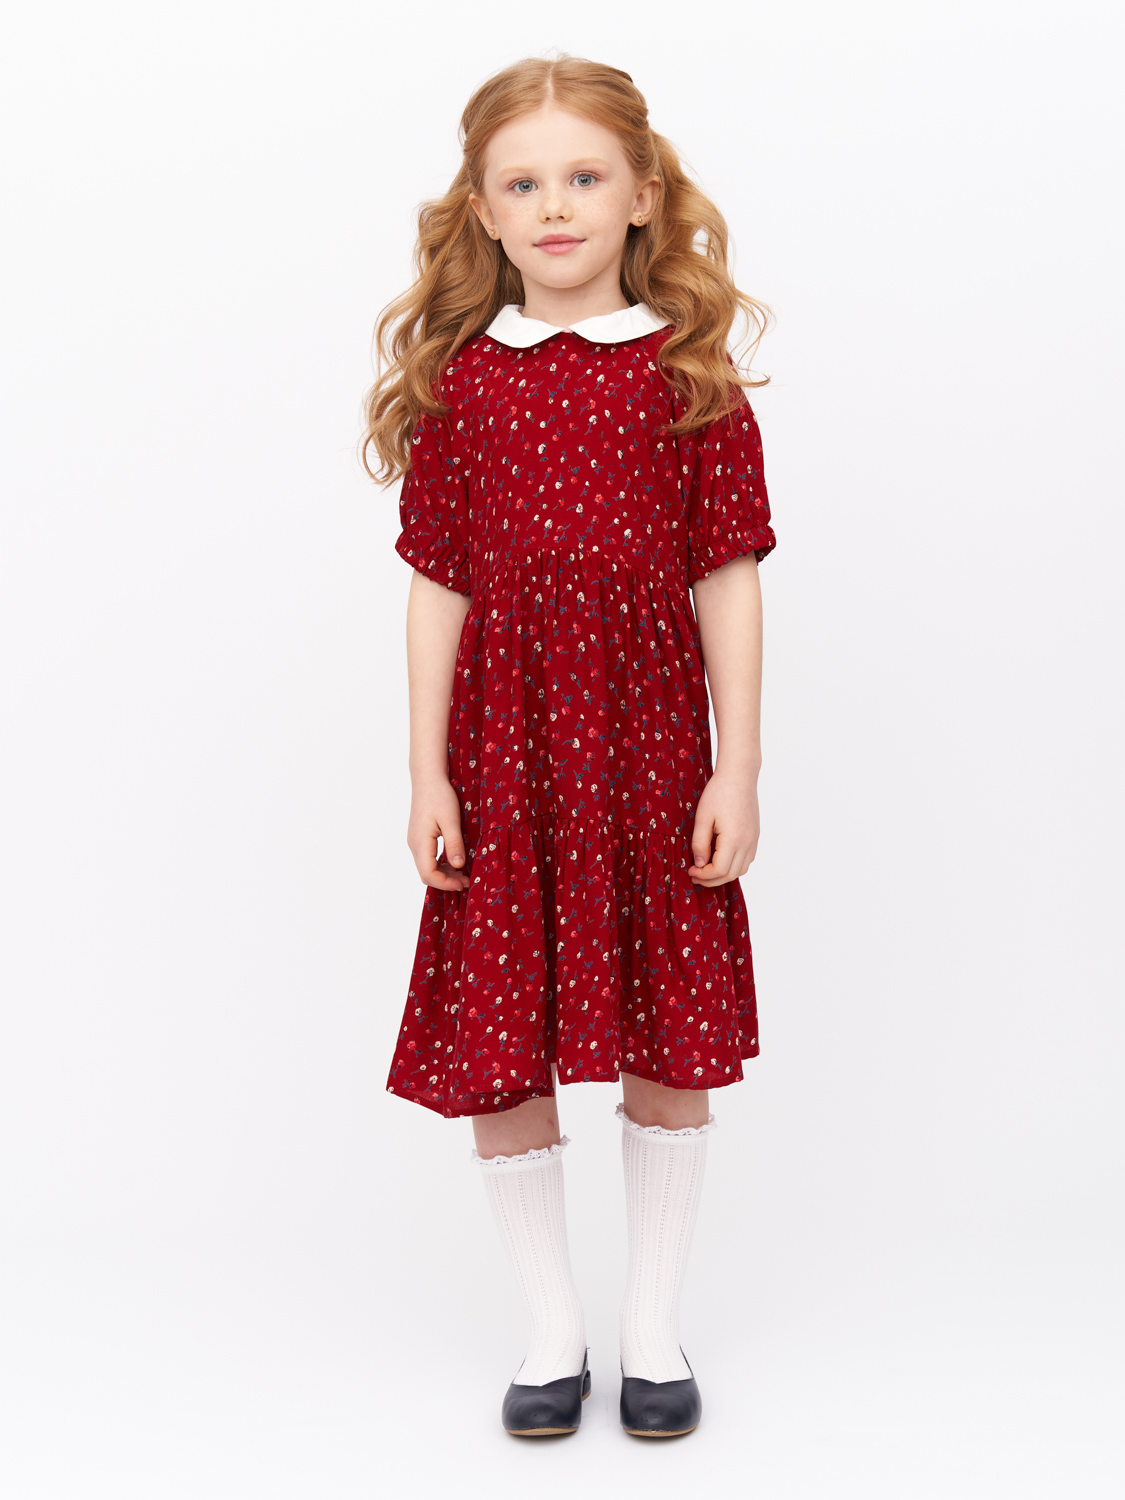 Платье детское Prime Baby PPP01804, бордовый, 122 платье с юбкой из фатина 6 7 бордовый loloclo